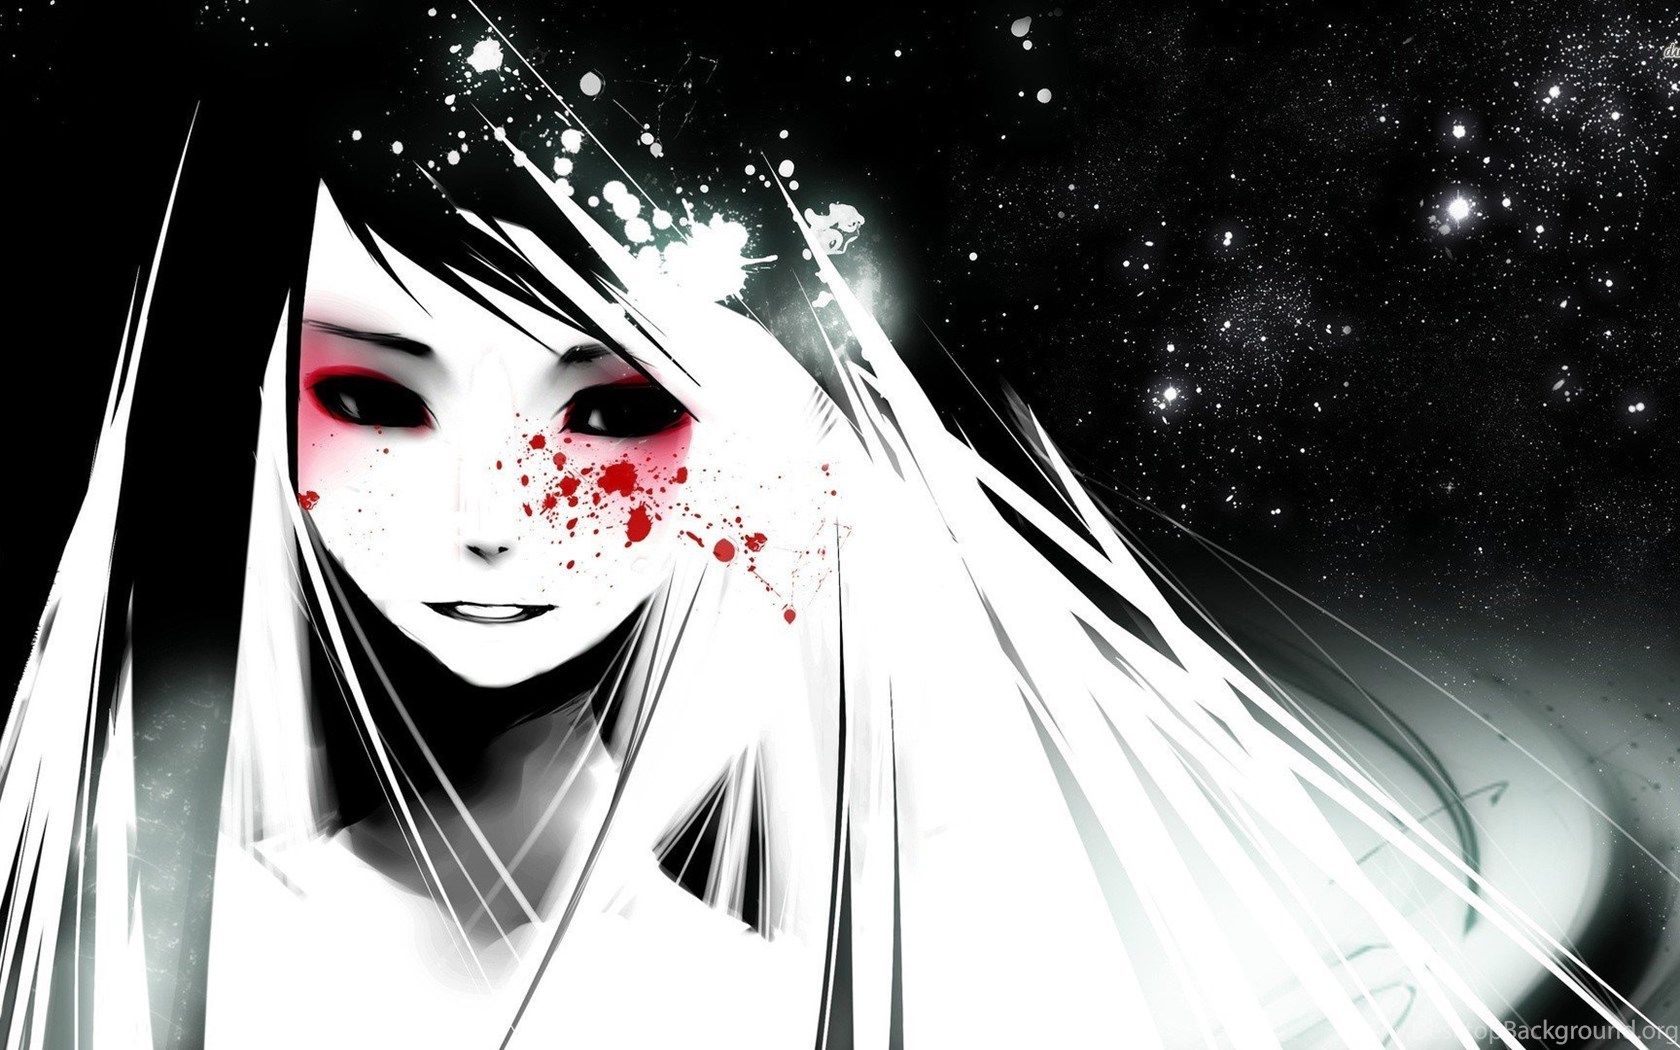 Anime Girl Blood On Face Wallpaper .desktopbackground.org